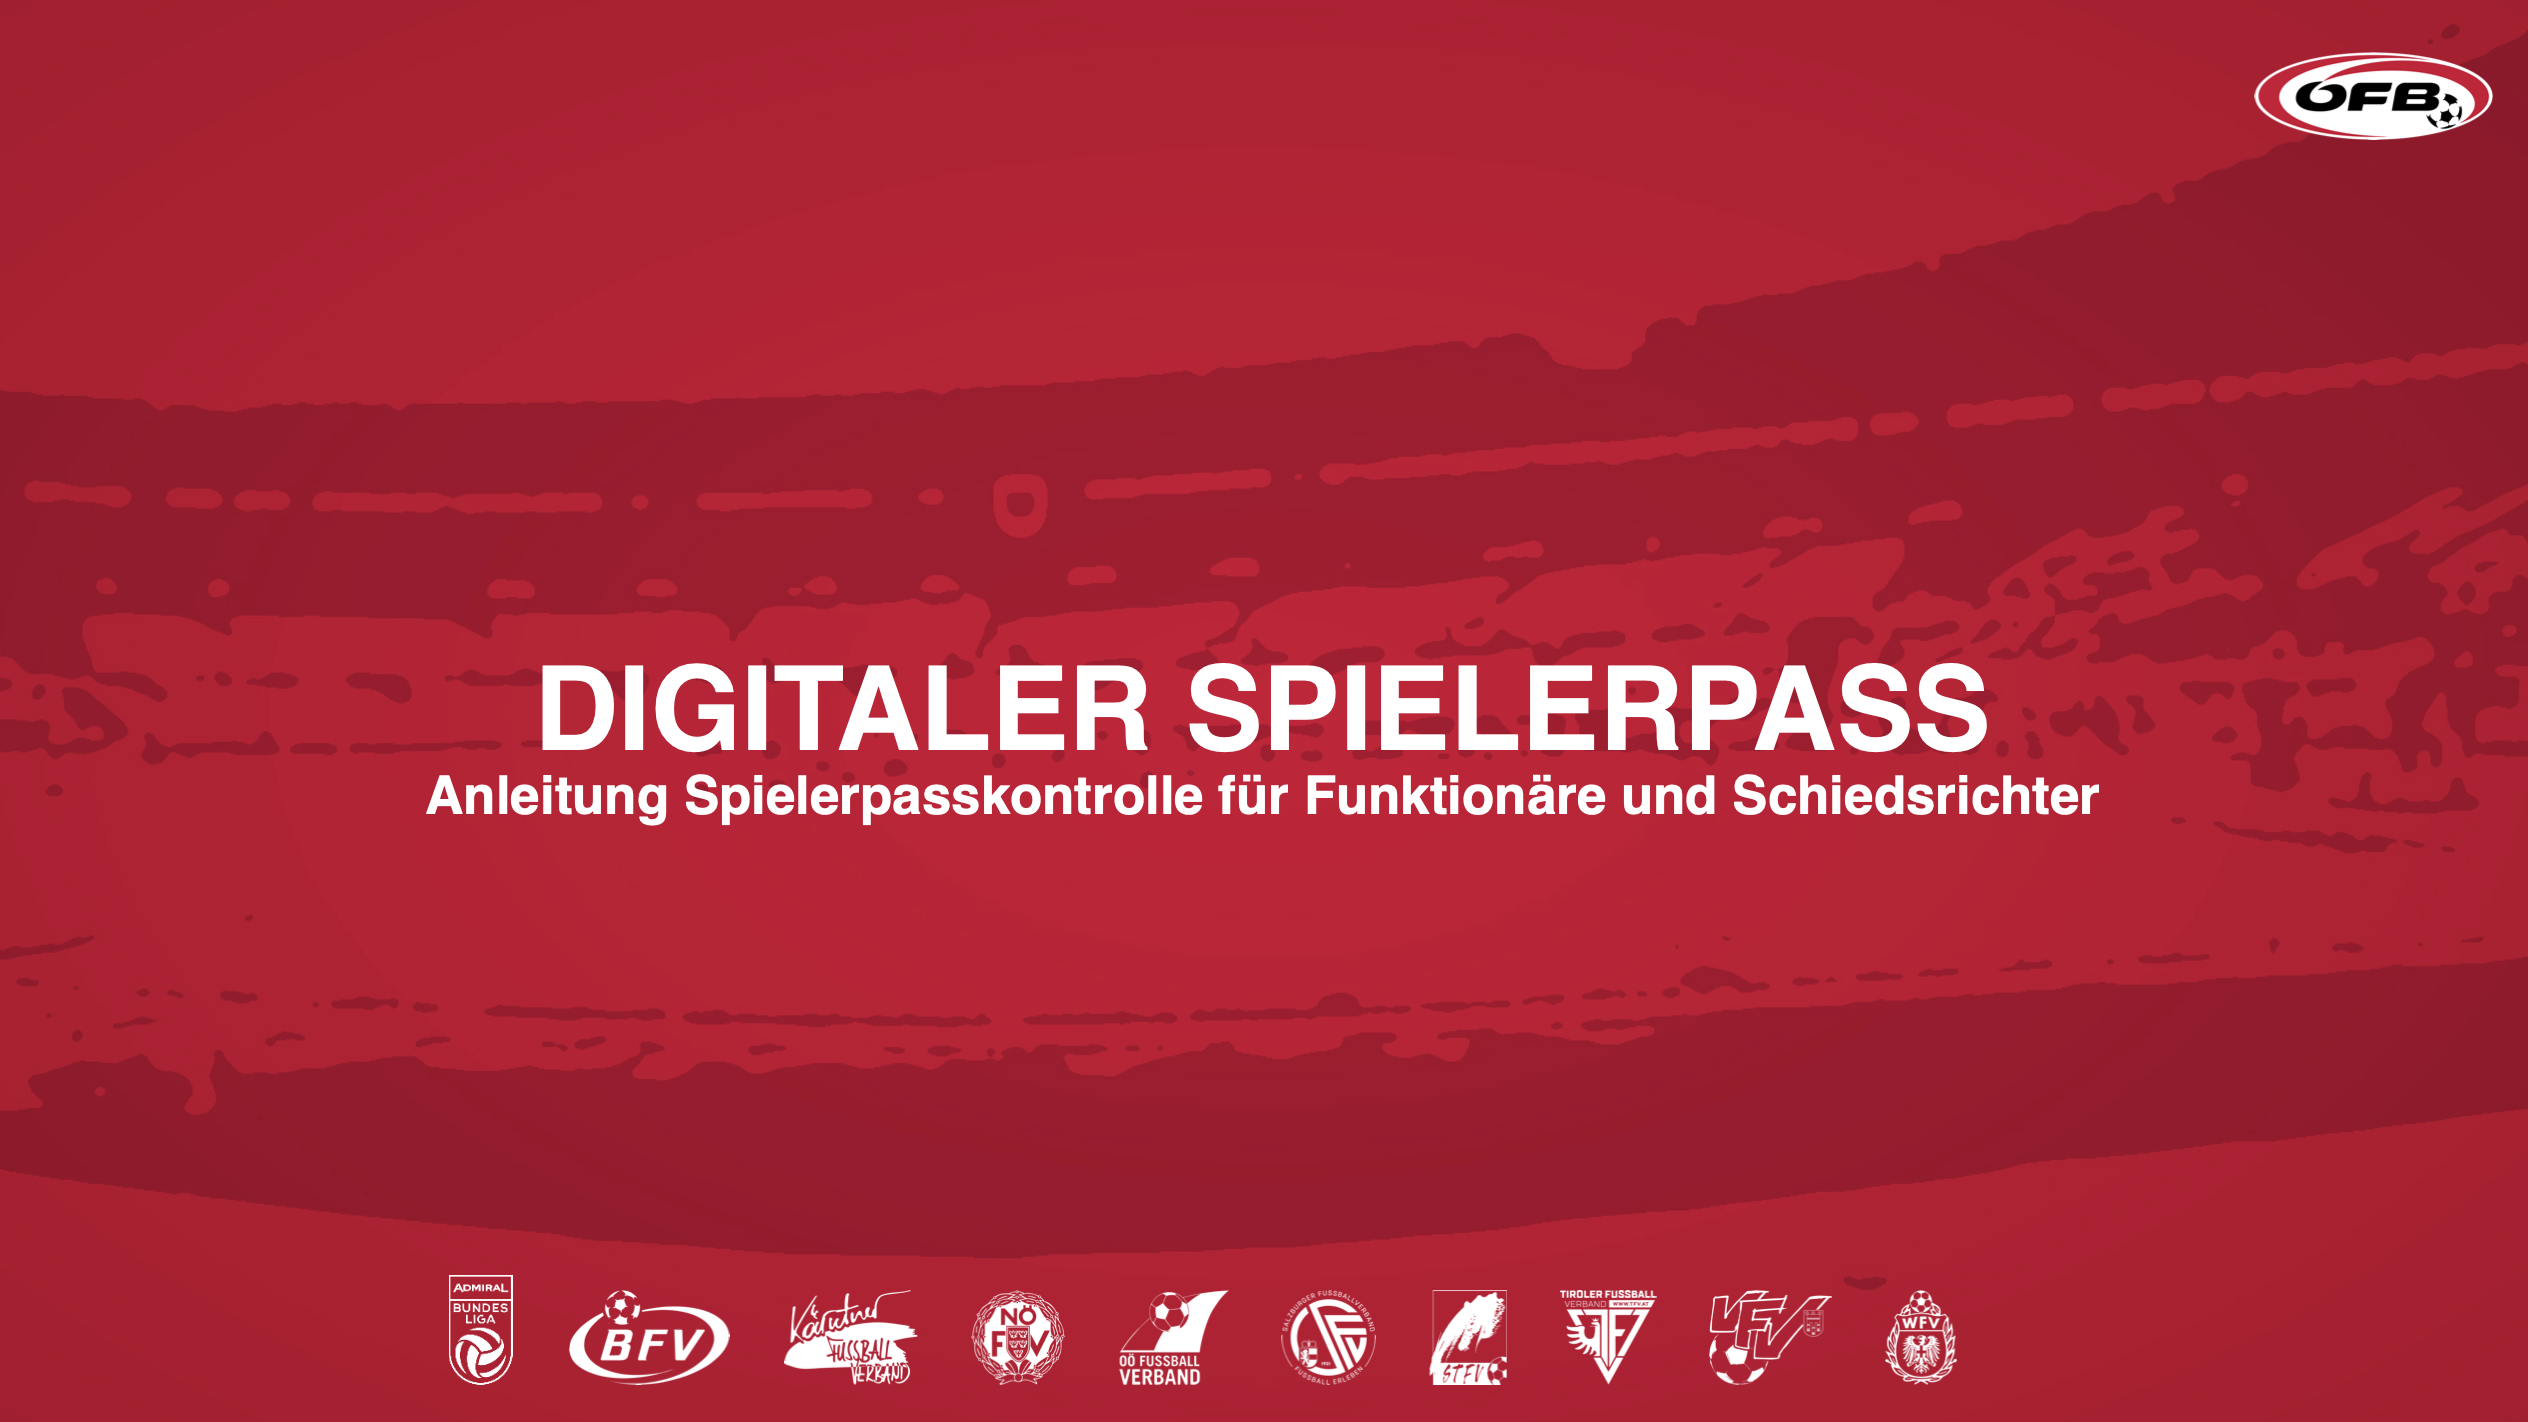 Digitaler Spielerpass oefb.at